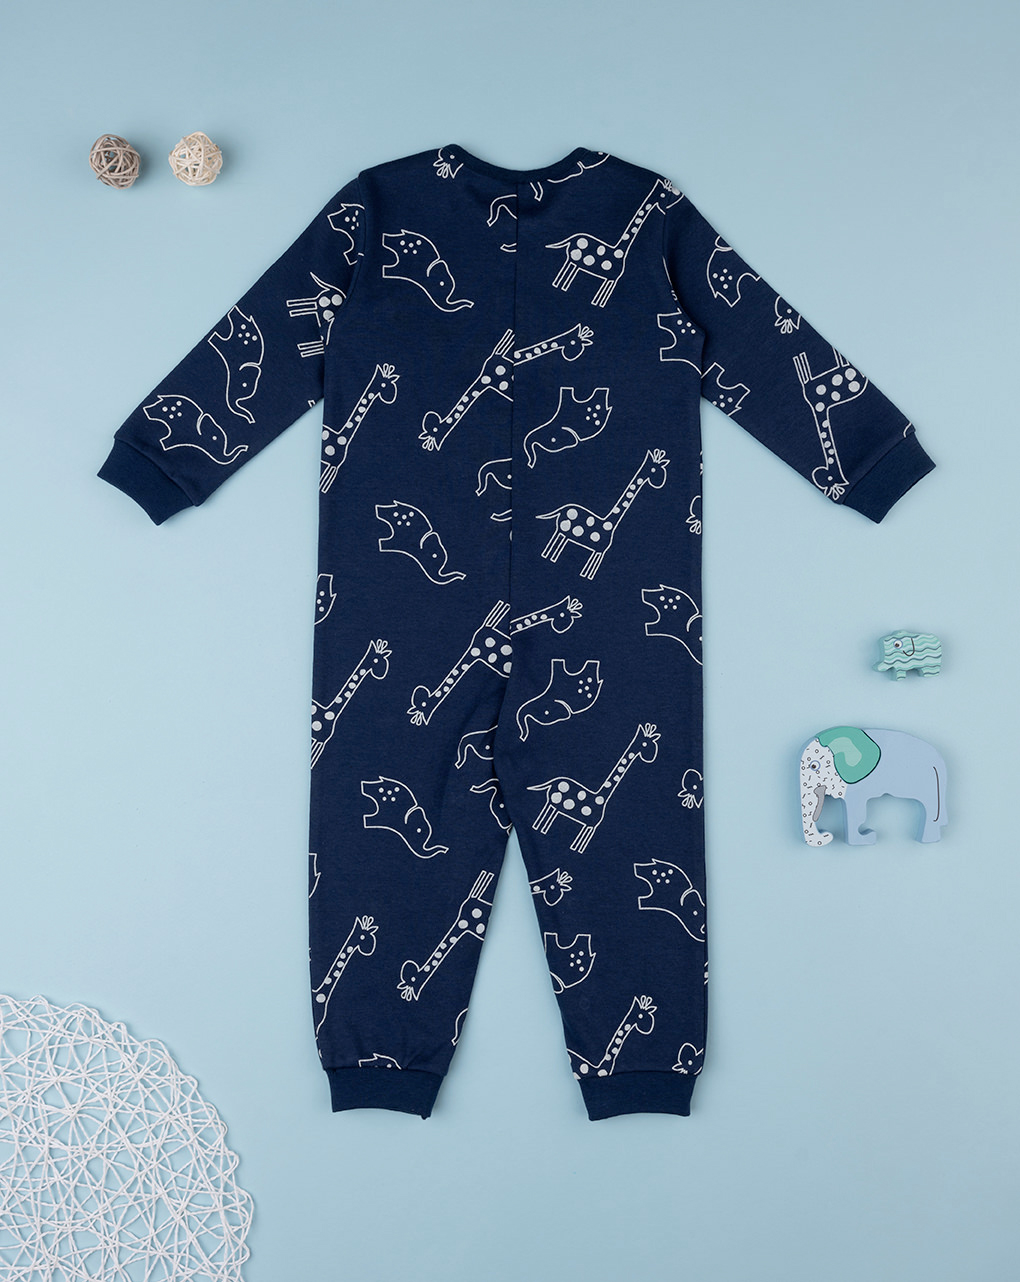 βρεφική ολόσωμη πιτζάμα μπλε με ζωάκια για αγόρι - Prénatal